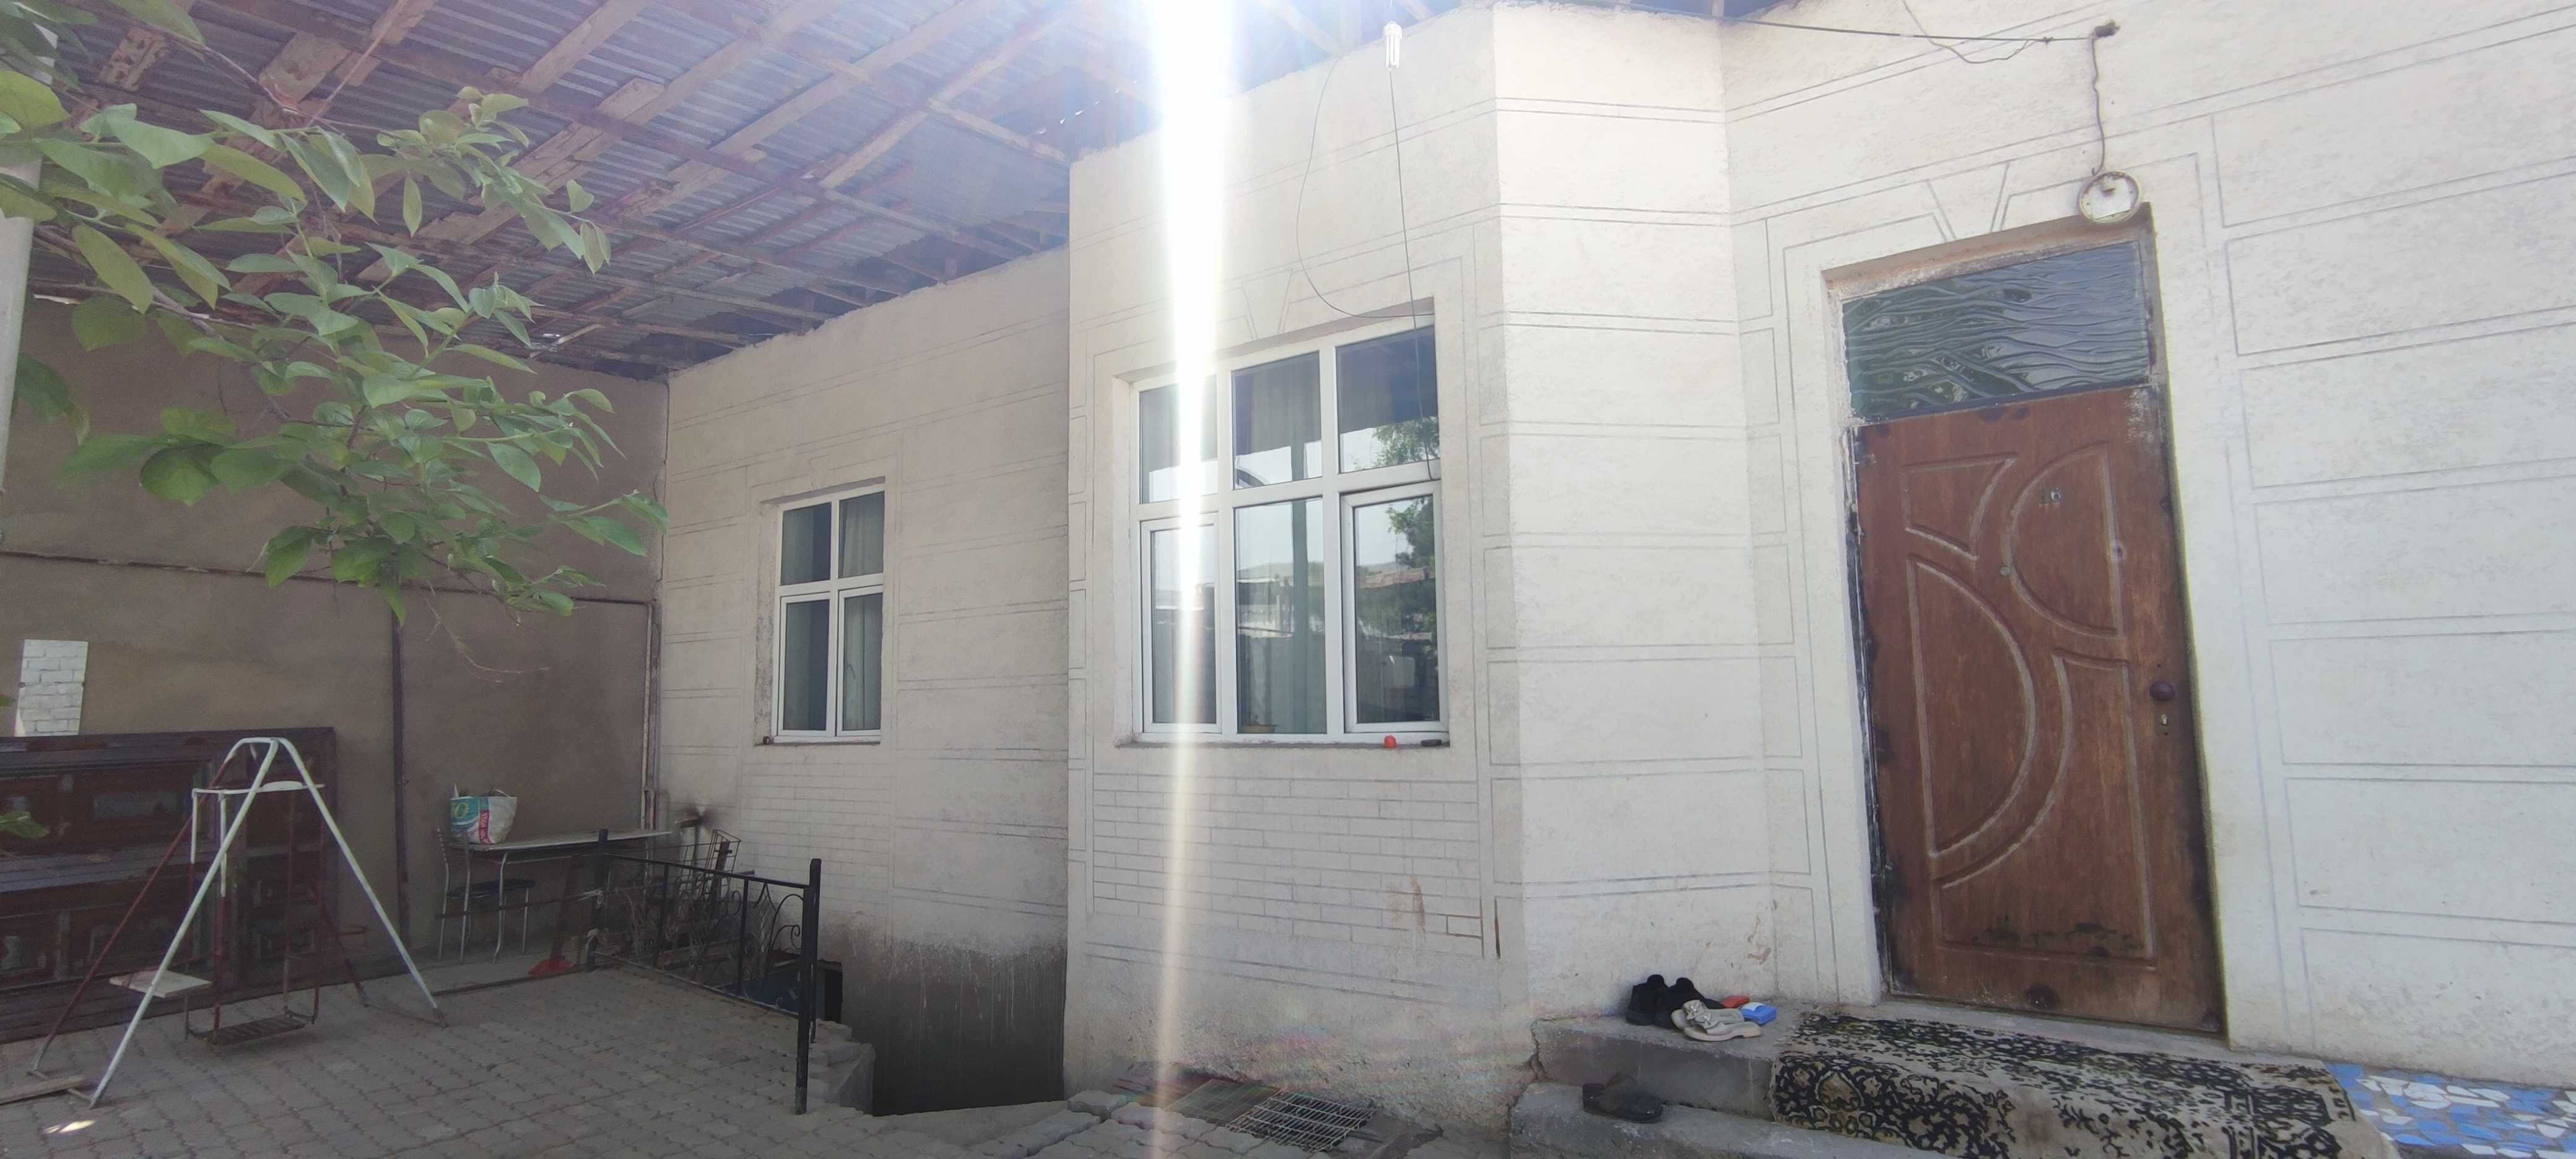 Ховли уй, Дом в Ташкенте , Умное здание